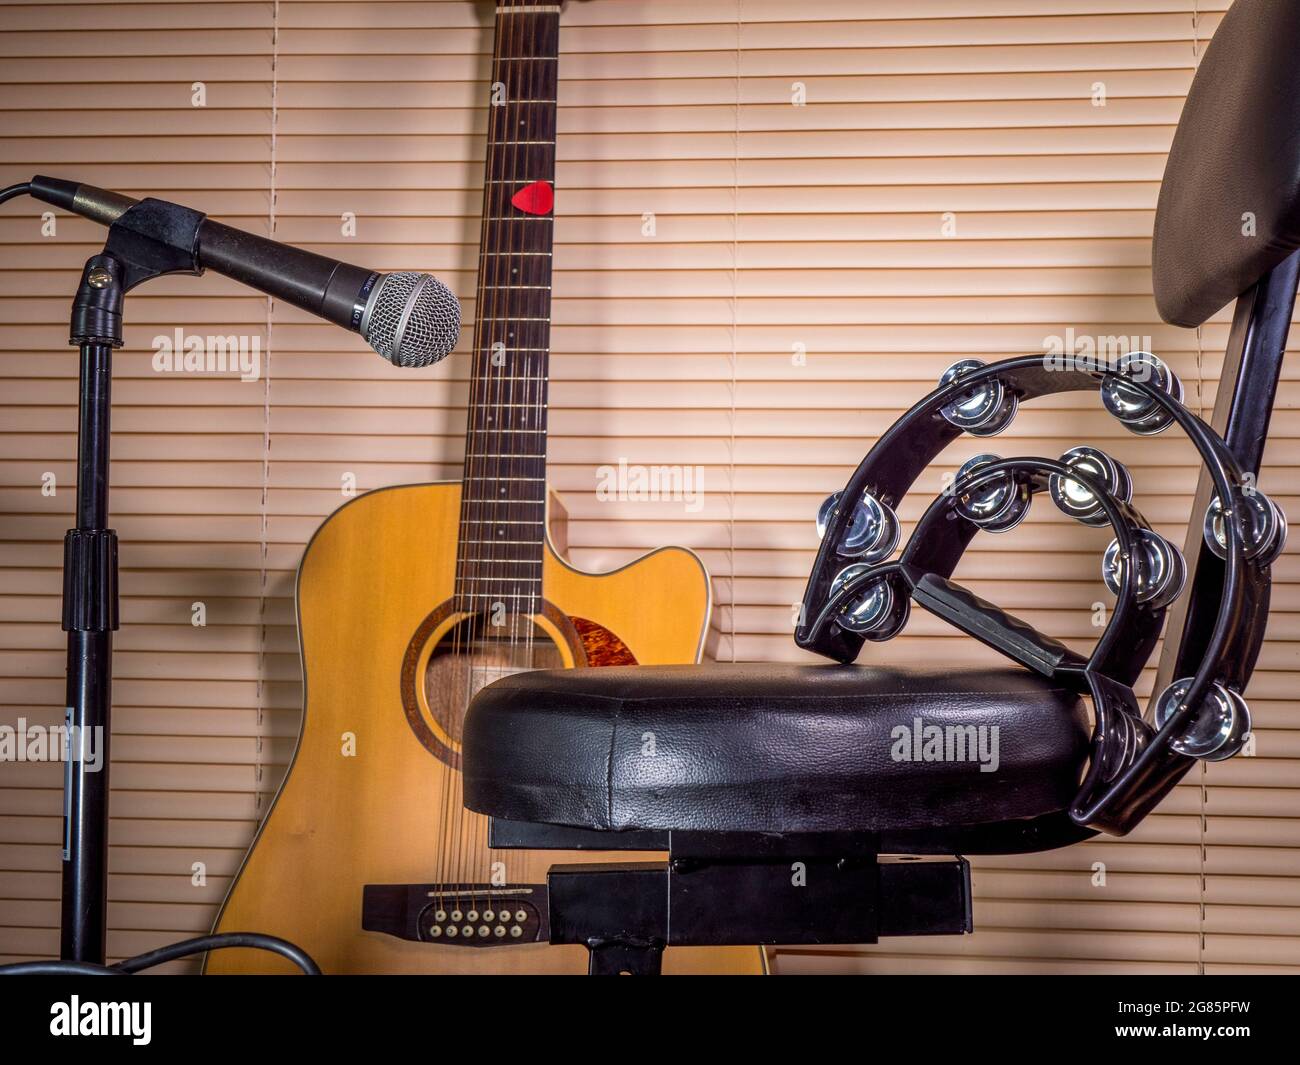 Un tambourin sur le siège rembourré d'un tabouret / chaise de performance musicale, avec une guitare acoustique et un microphone sur un stand à proximité. Banque D'Images